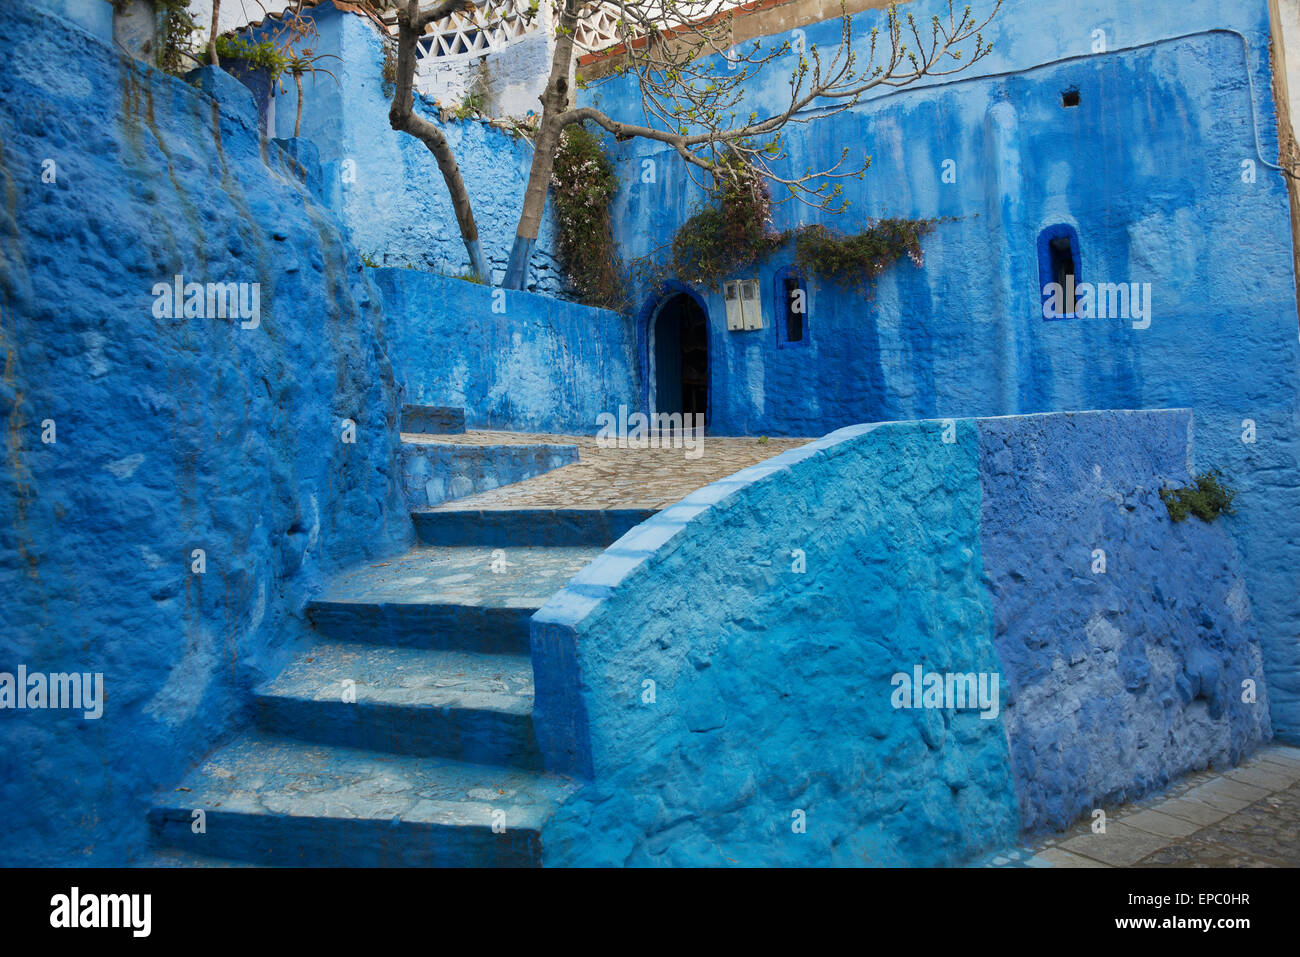 Las escaleras y los edificios pintados de azul; Chefchaouen, Cornwall, Marruecos Foto de stock